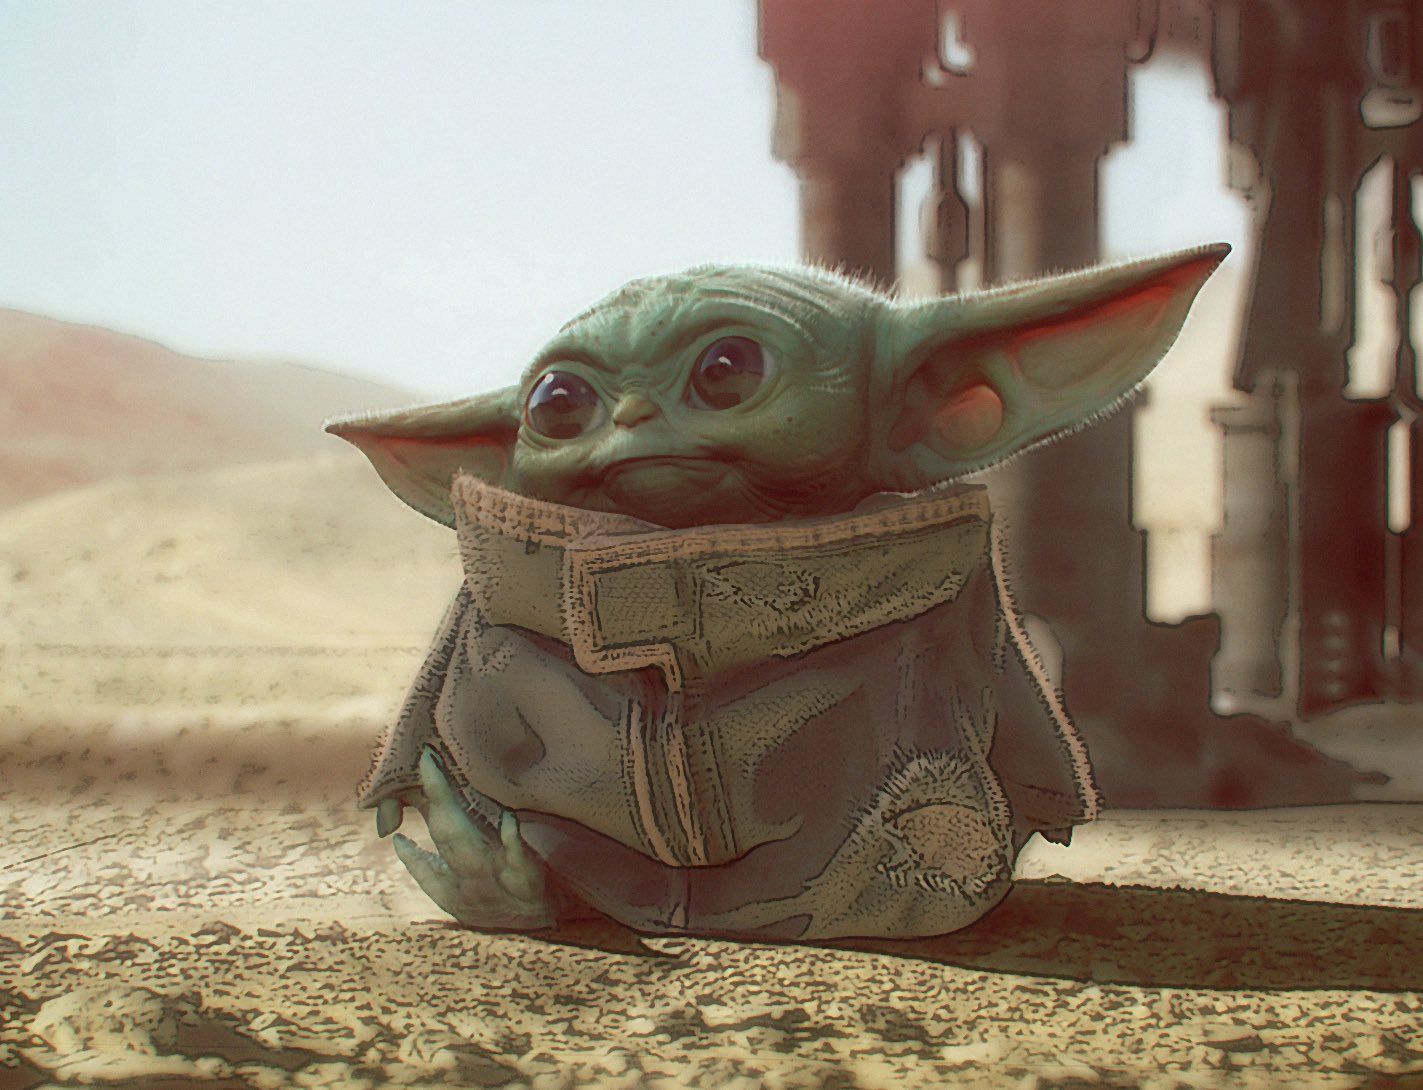 Un peluche de Baby Yoda ha sido mandado al espacio con una misión